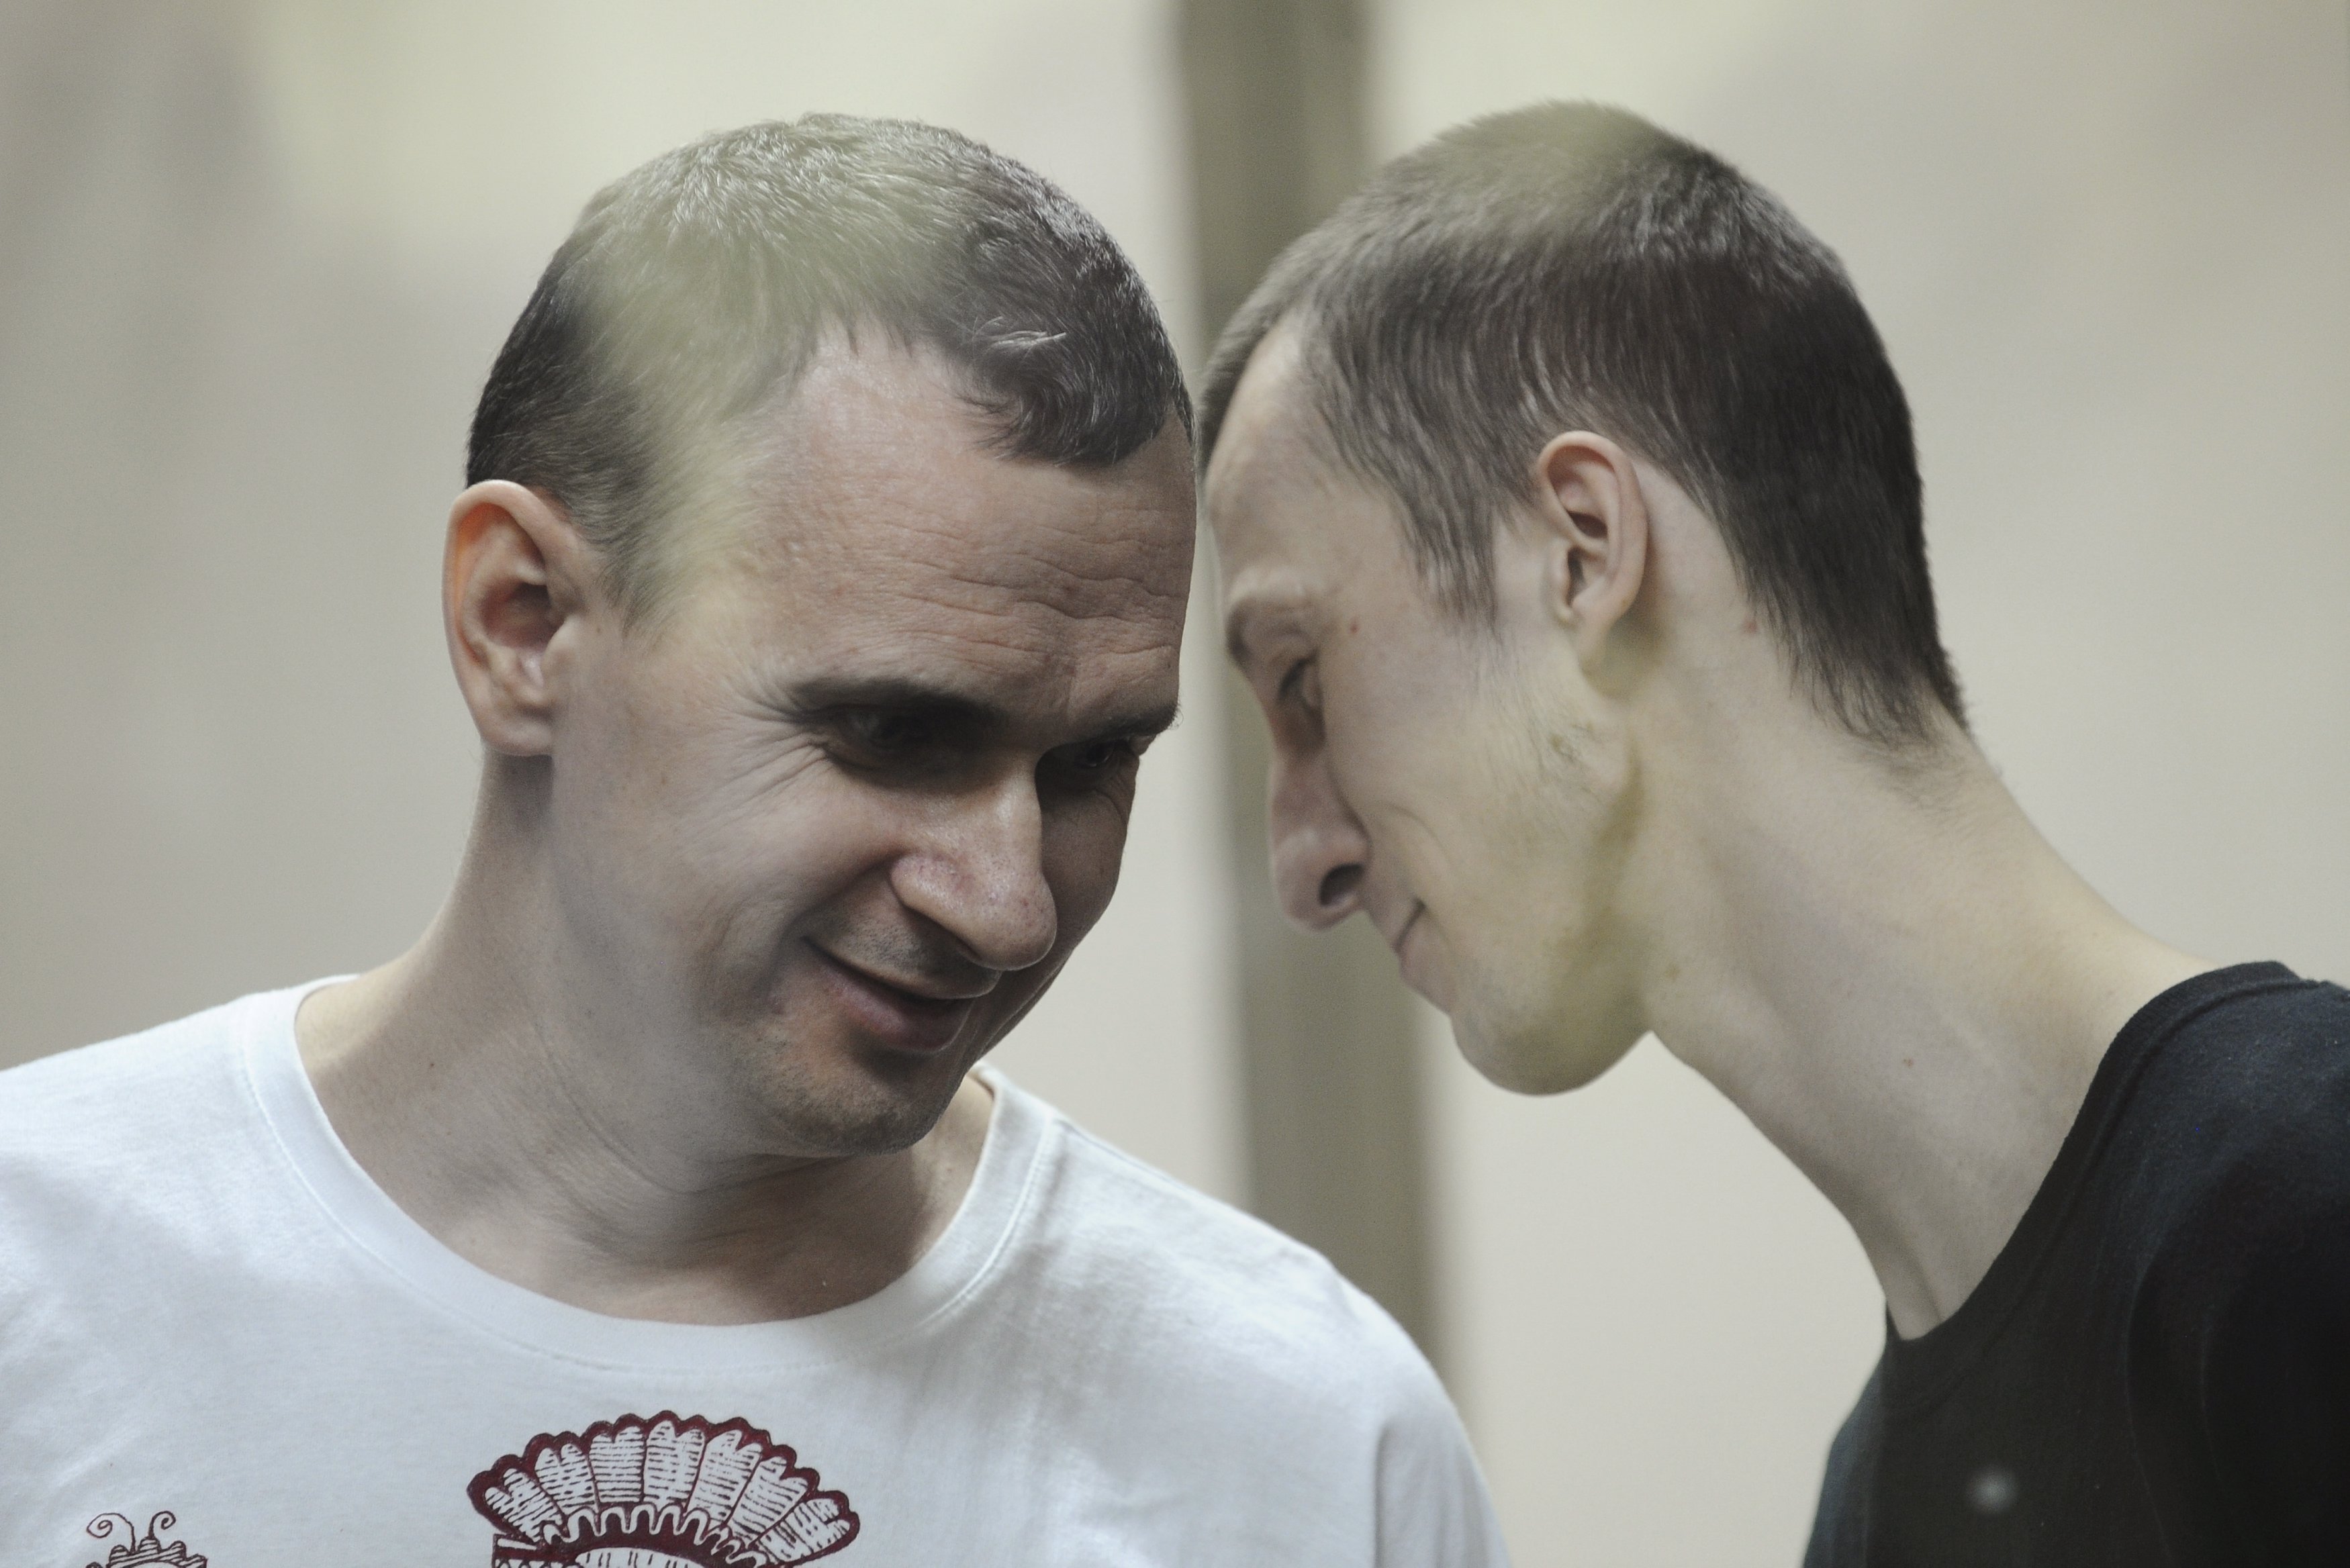 31 украинец ждет освобождения из российских застенков